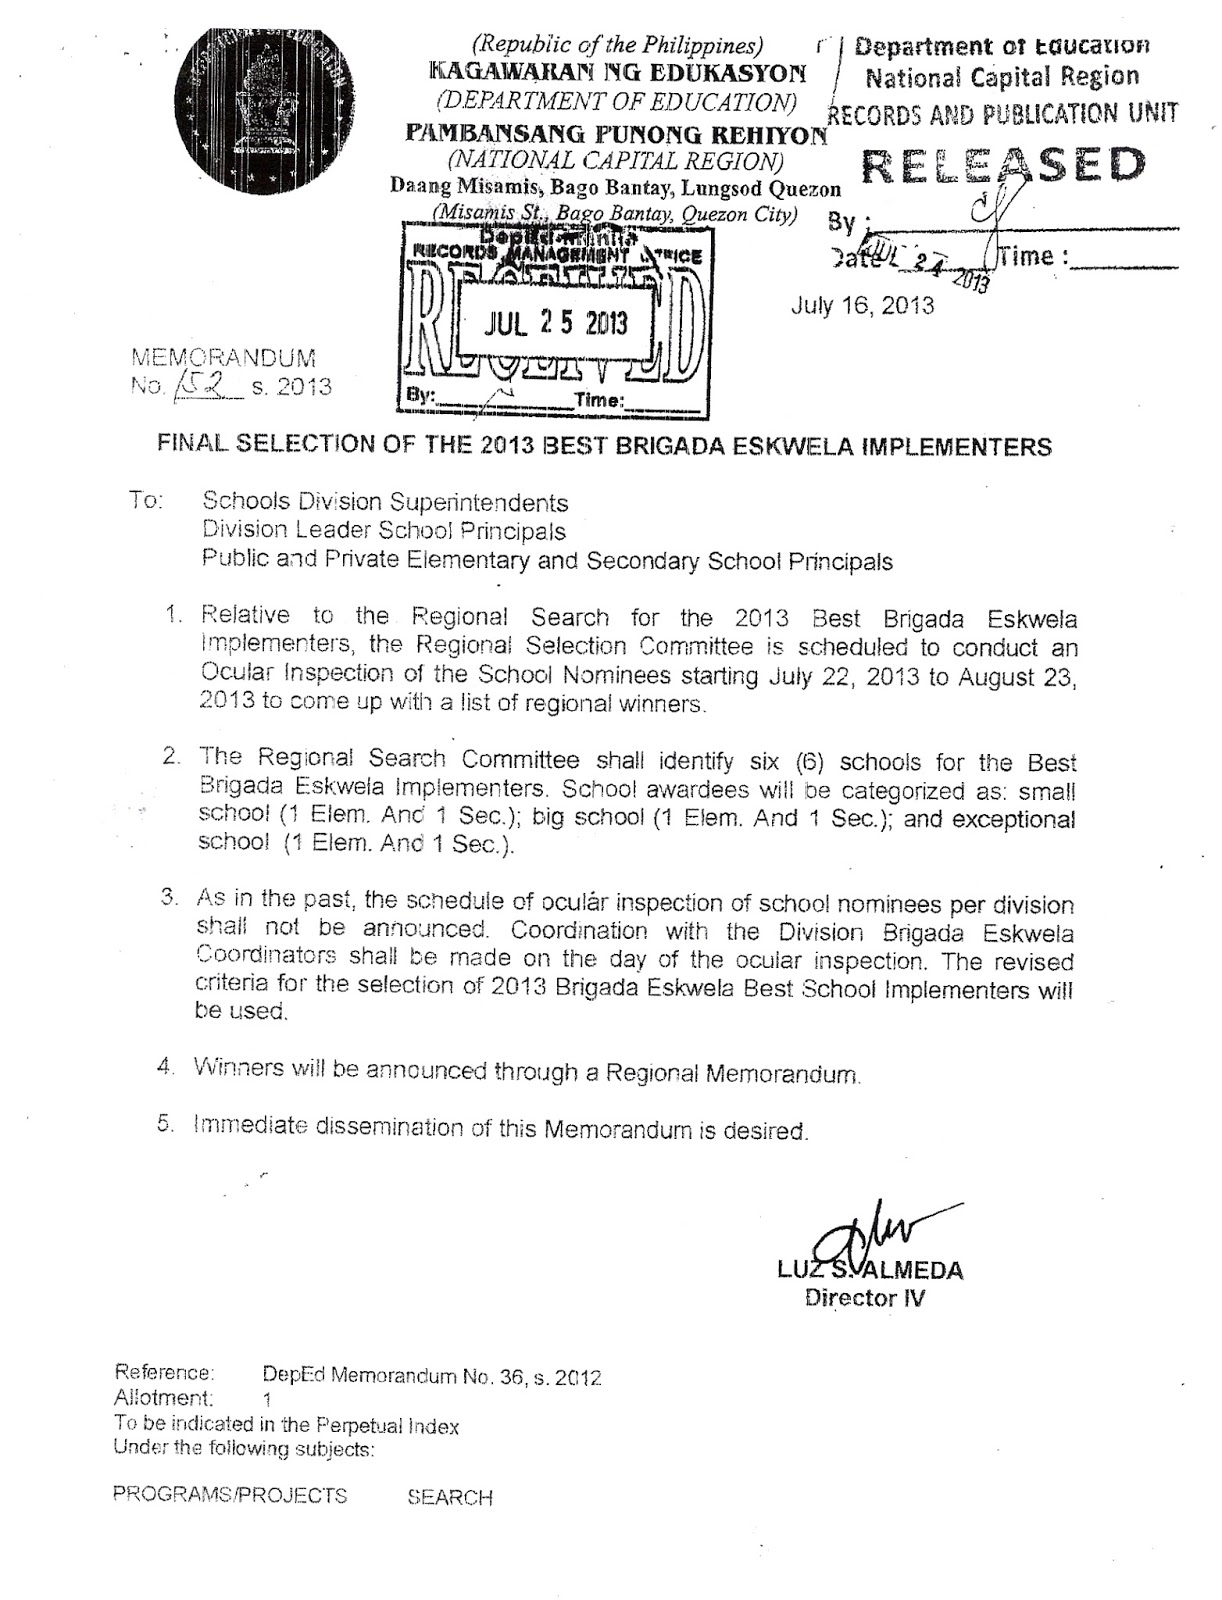 Department Of Education Manila Division Memorandum No 423 Final